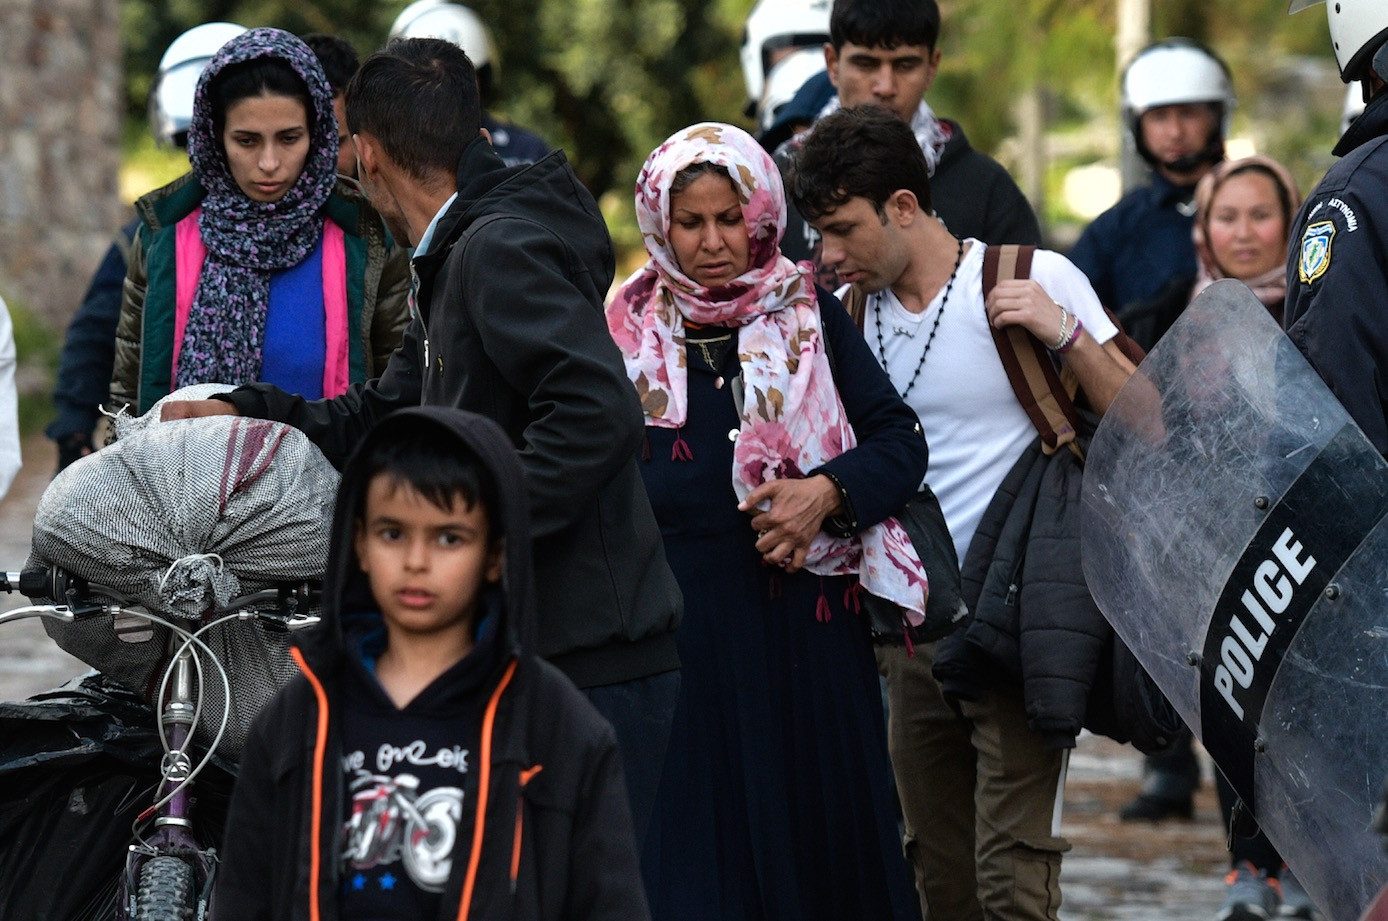 Νέα αναστάτωση στη Λέσβο μετά τις πληροφορίες για μεταφορά μεταναστών στην ηπειρωτική Ελλάδα